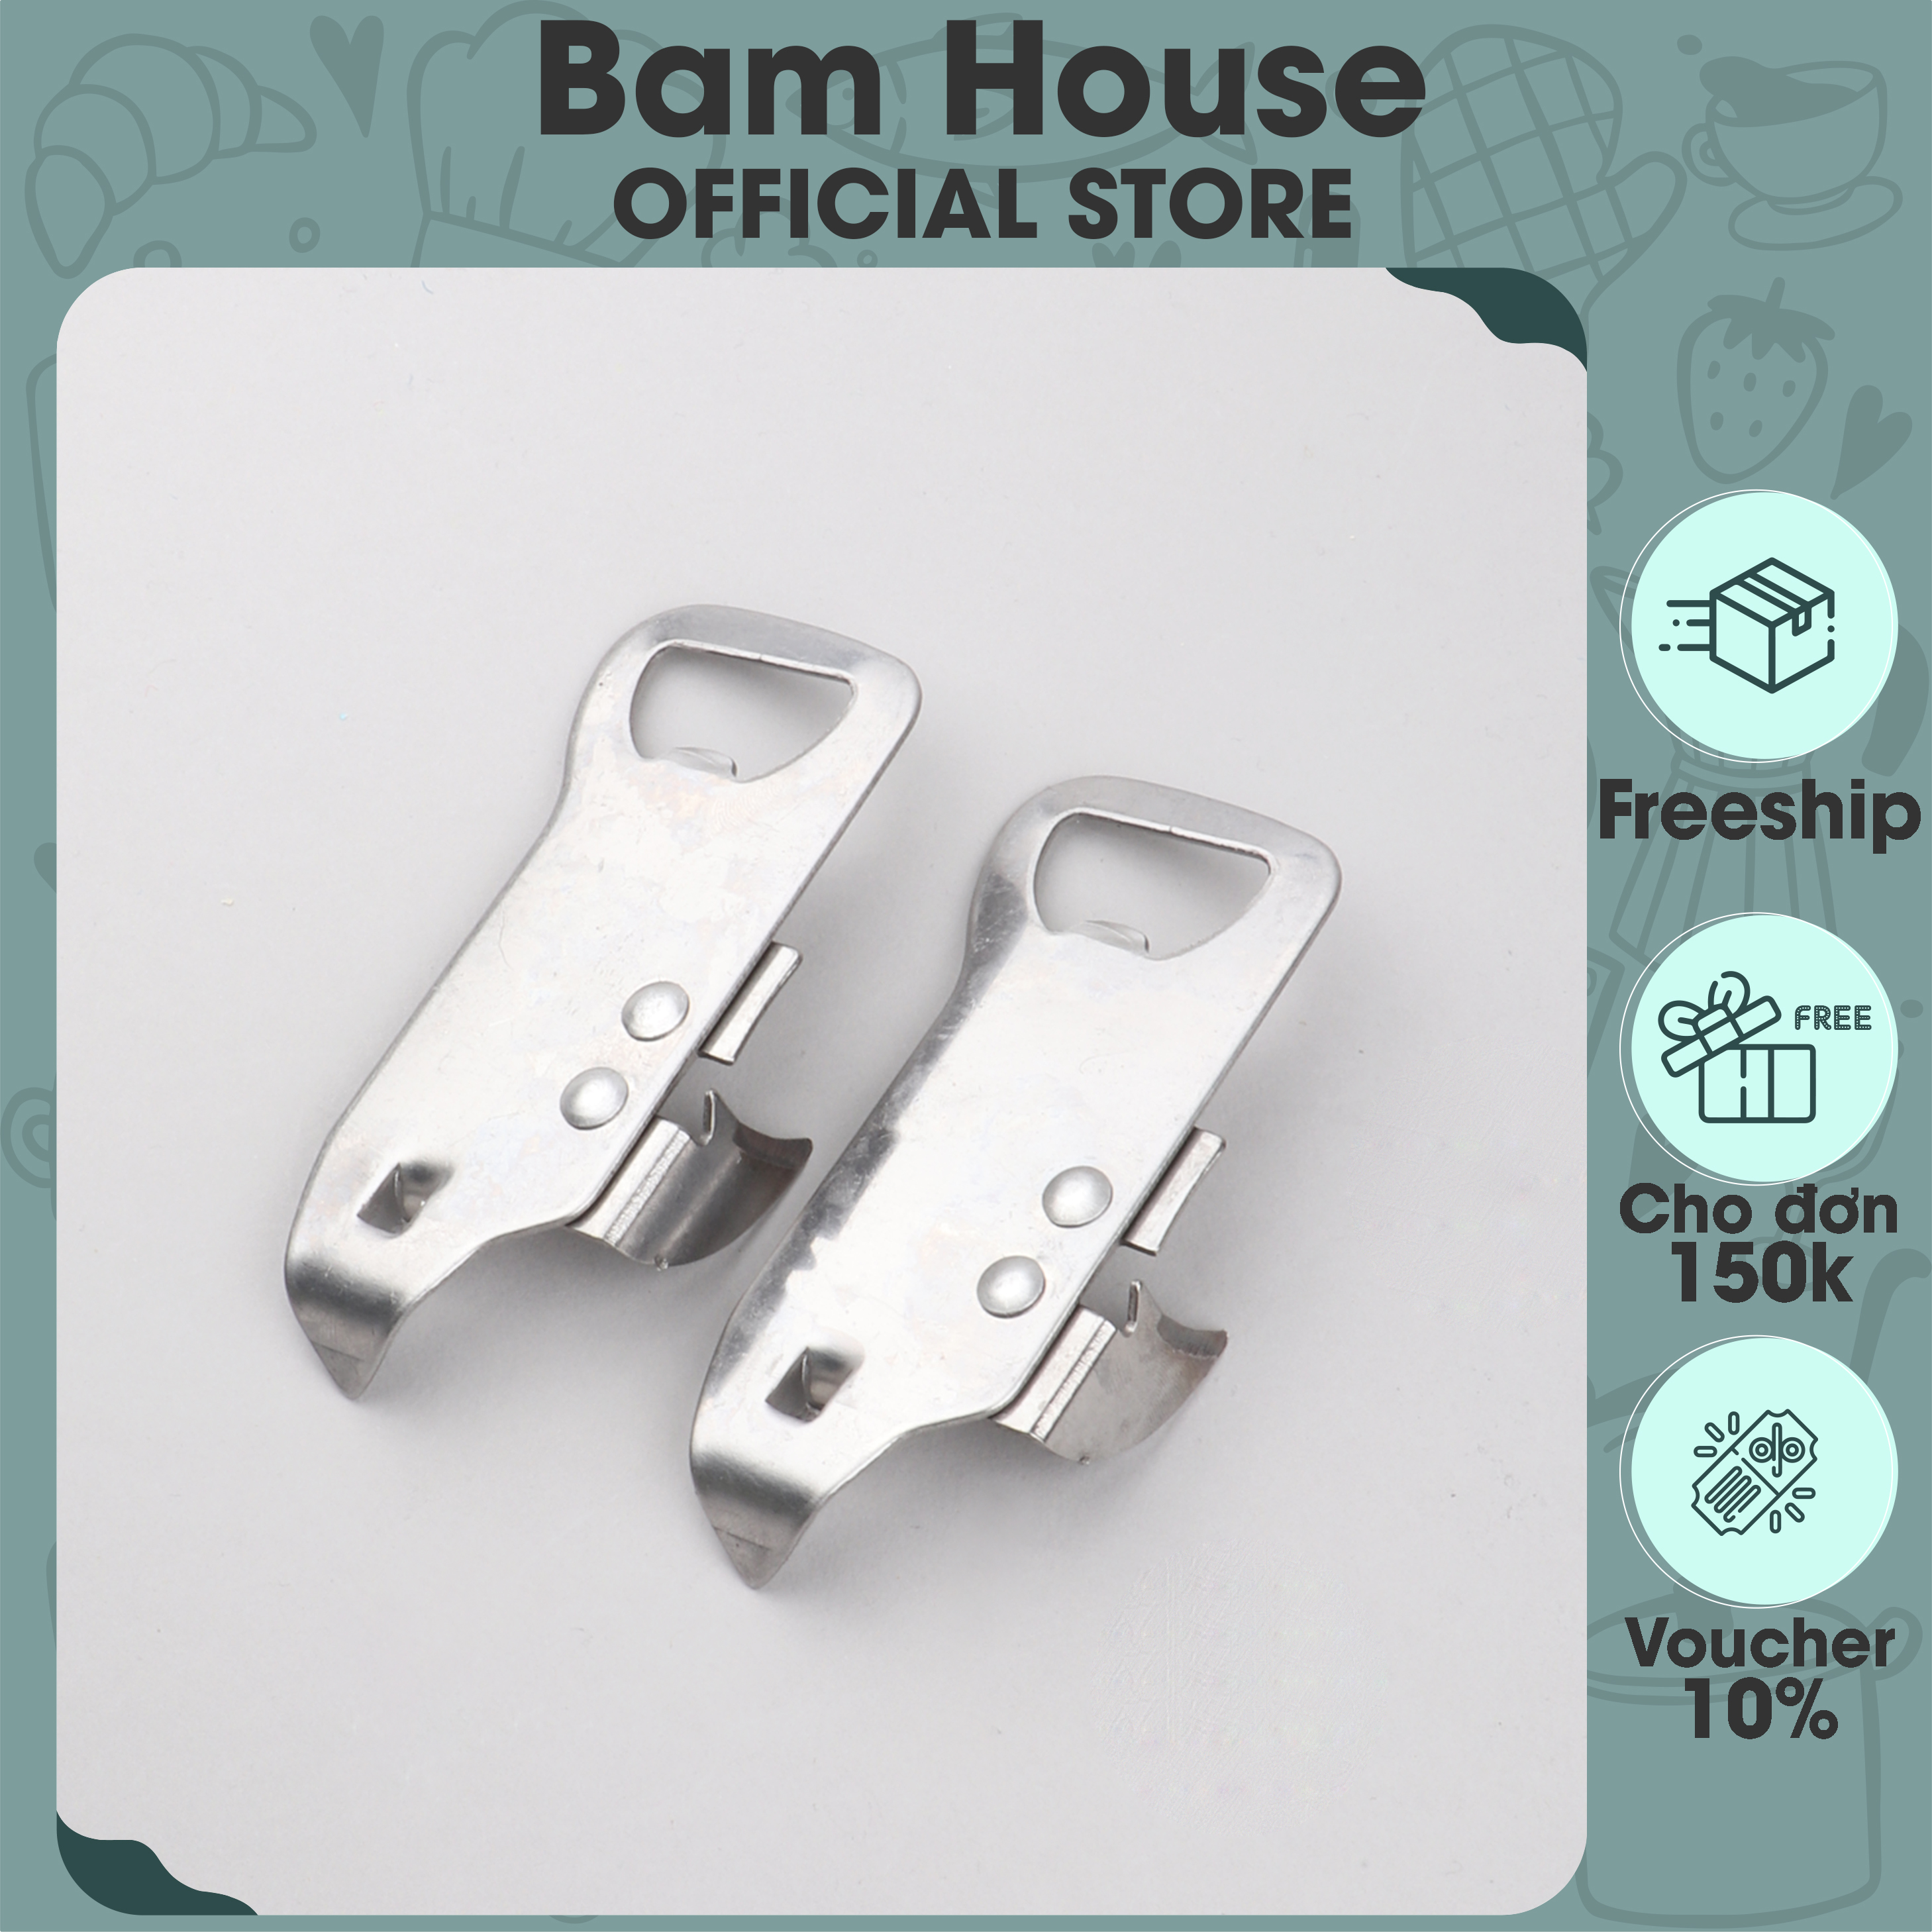 Dụng cụ khui đồ hộp, khui chai inox Bam House đa năng tiện lợi cao cấp